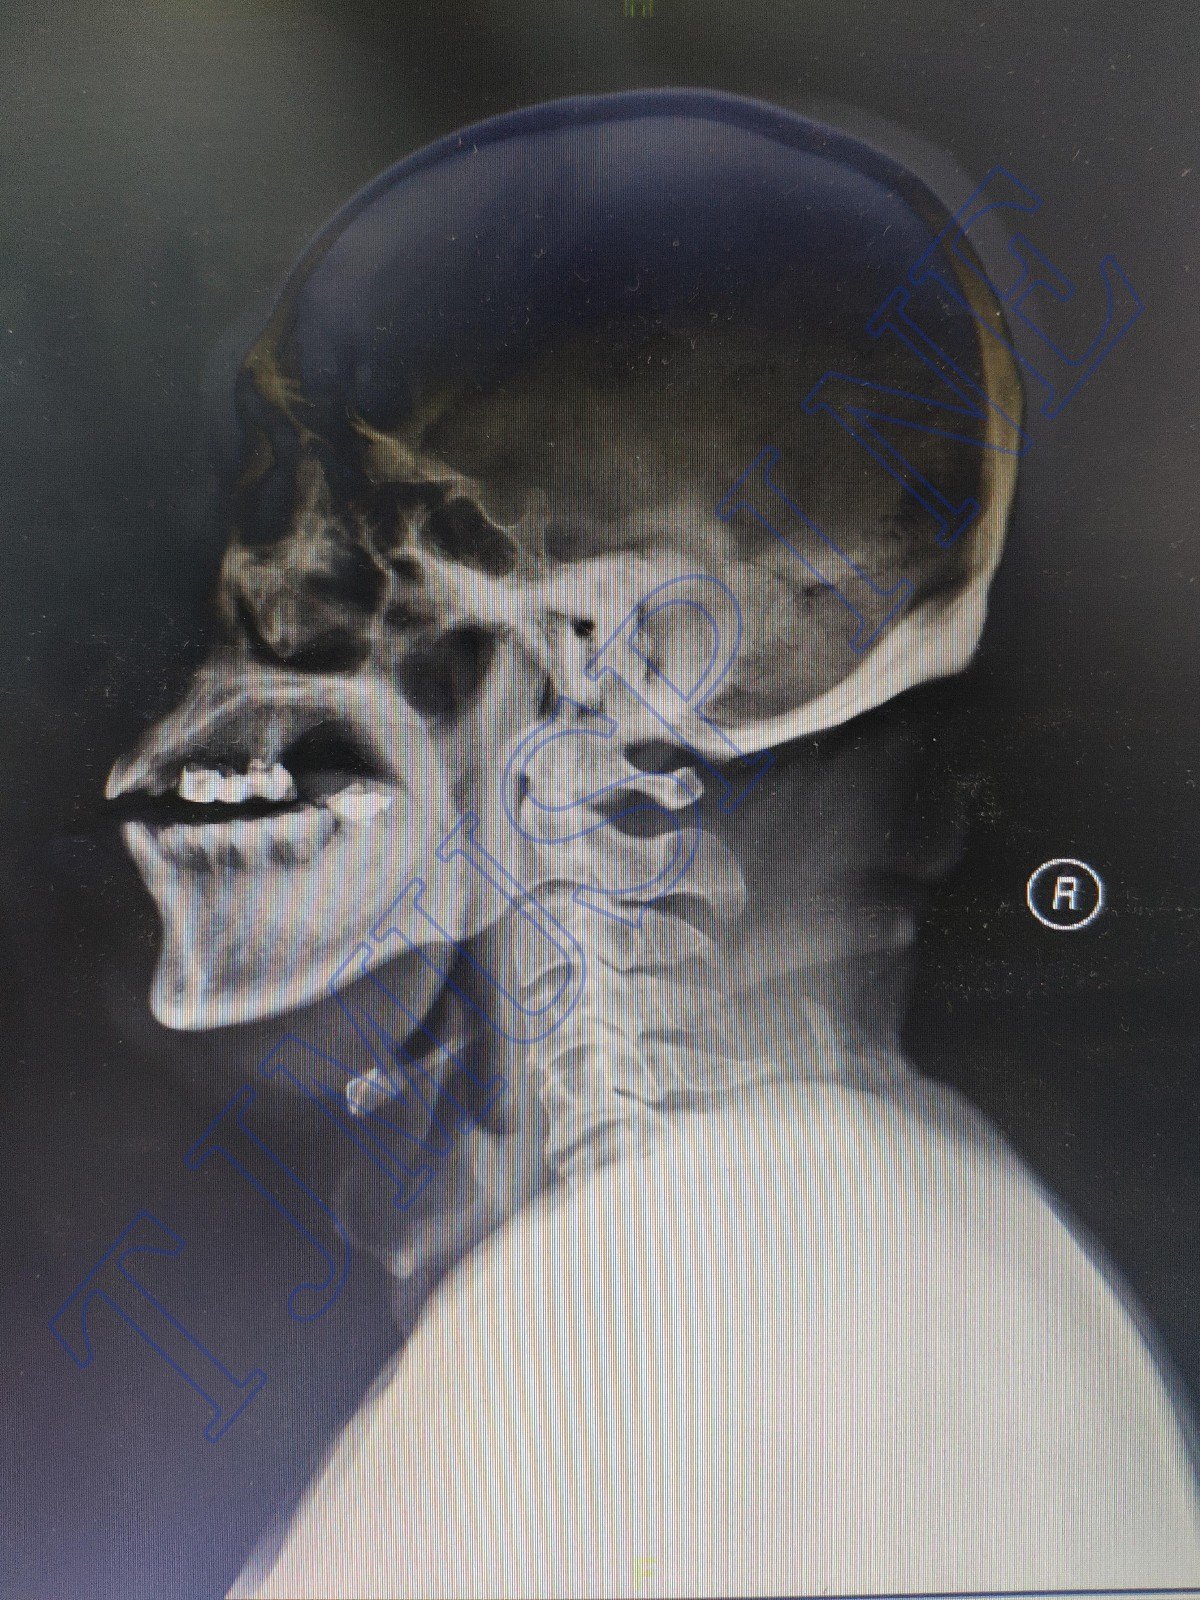 寰枢椎后路切开复位内固定术治疗陈旧性齿突骨折伴C 1,2 不稳症